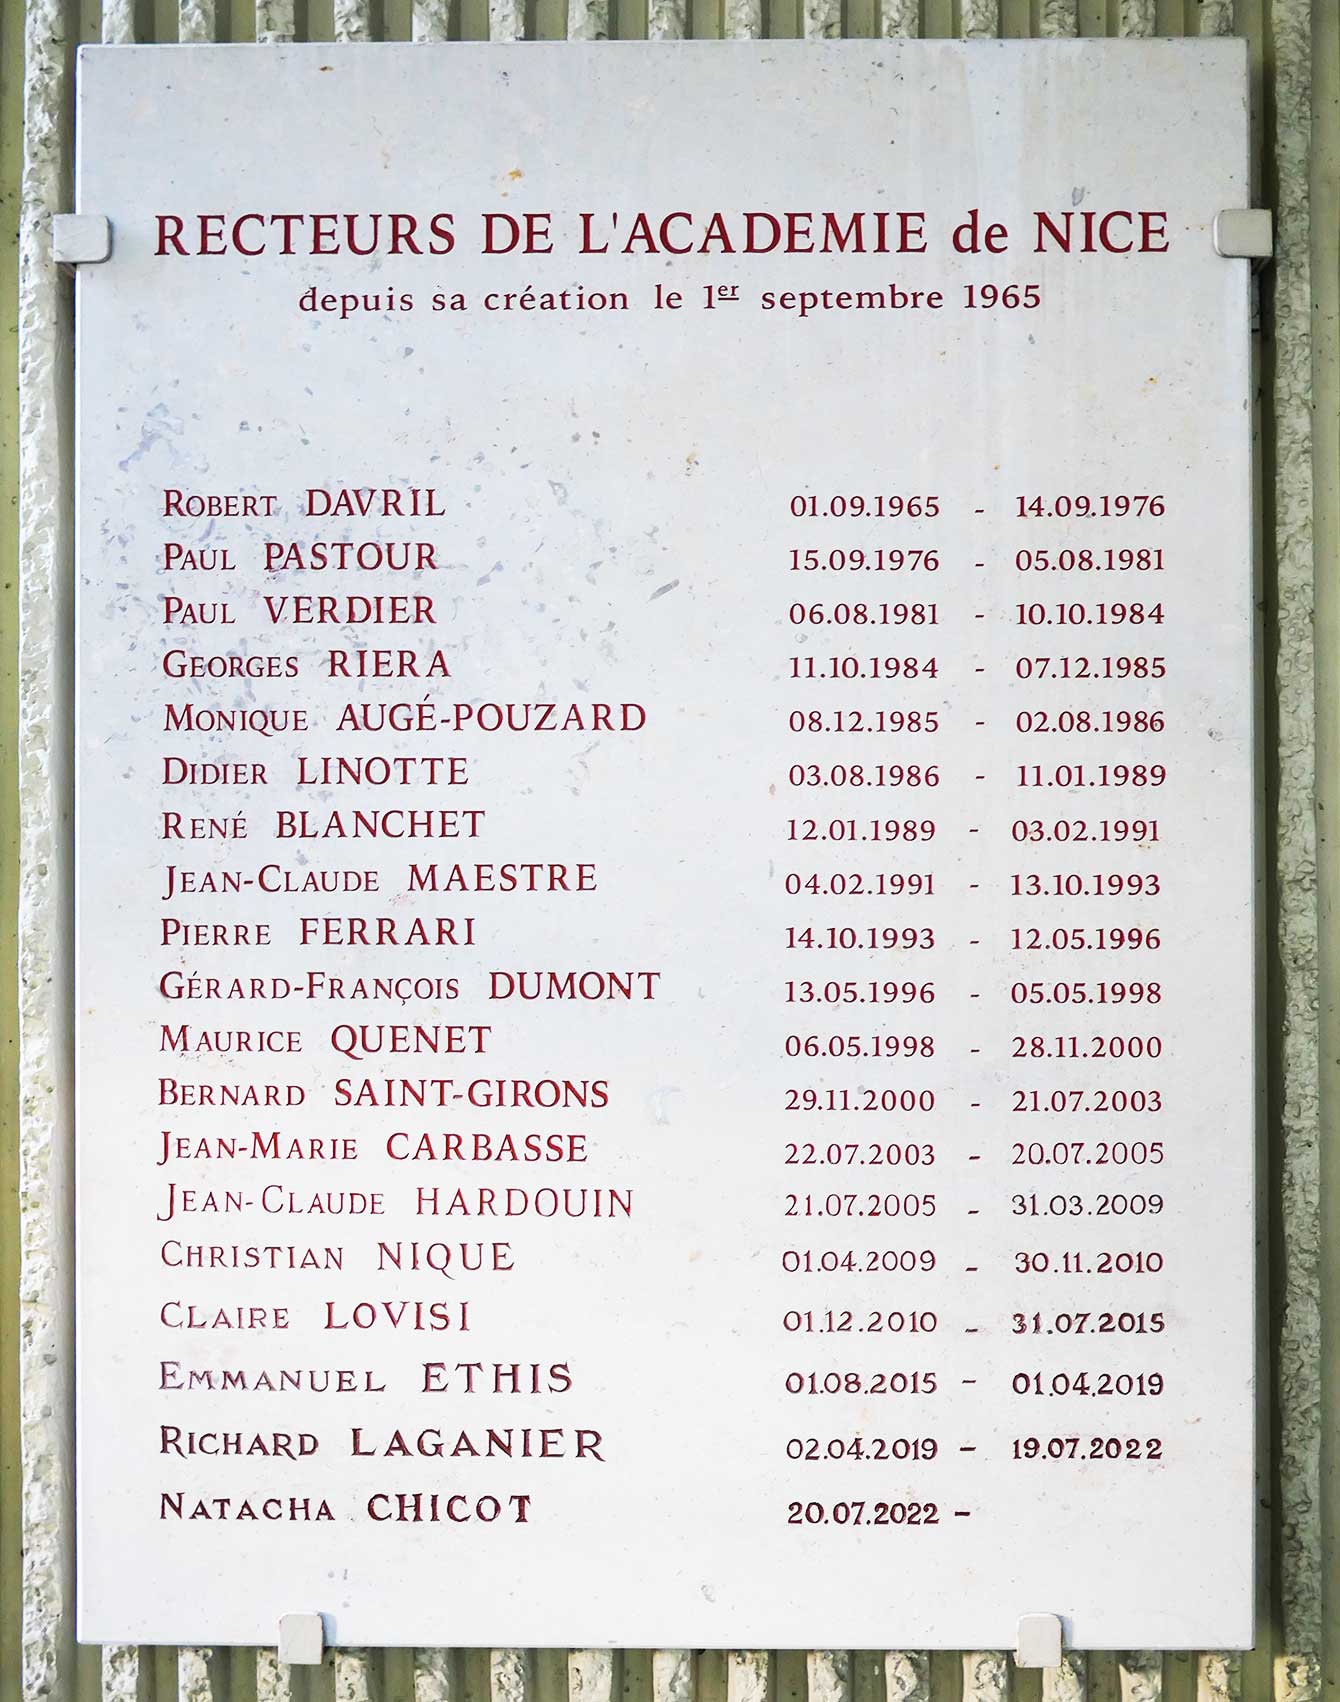 liste des rectrices et recteurs de l'académie de Nice